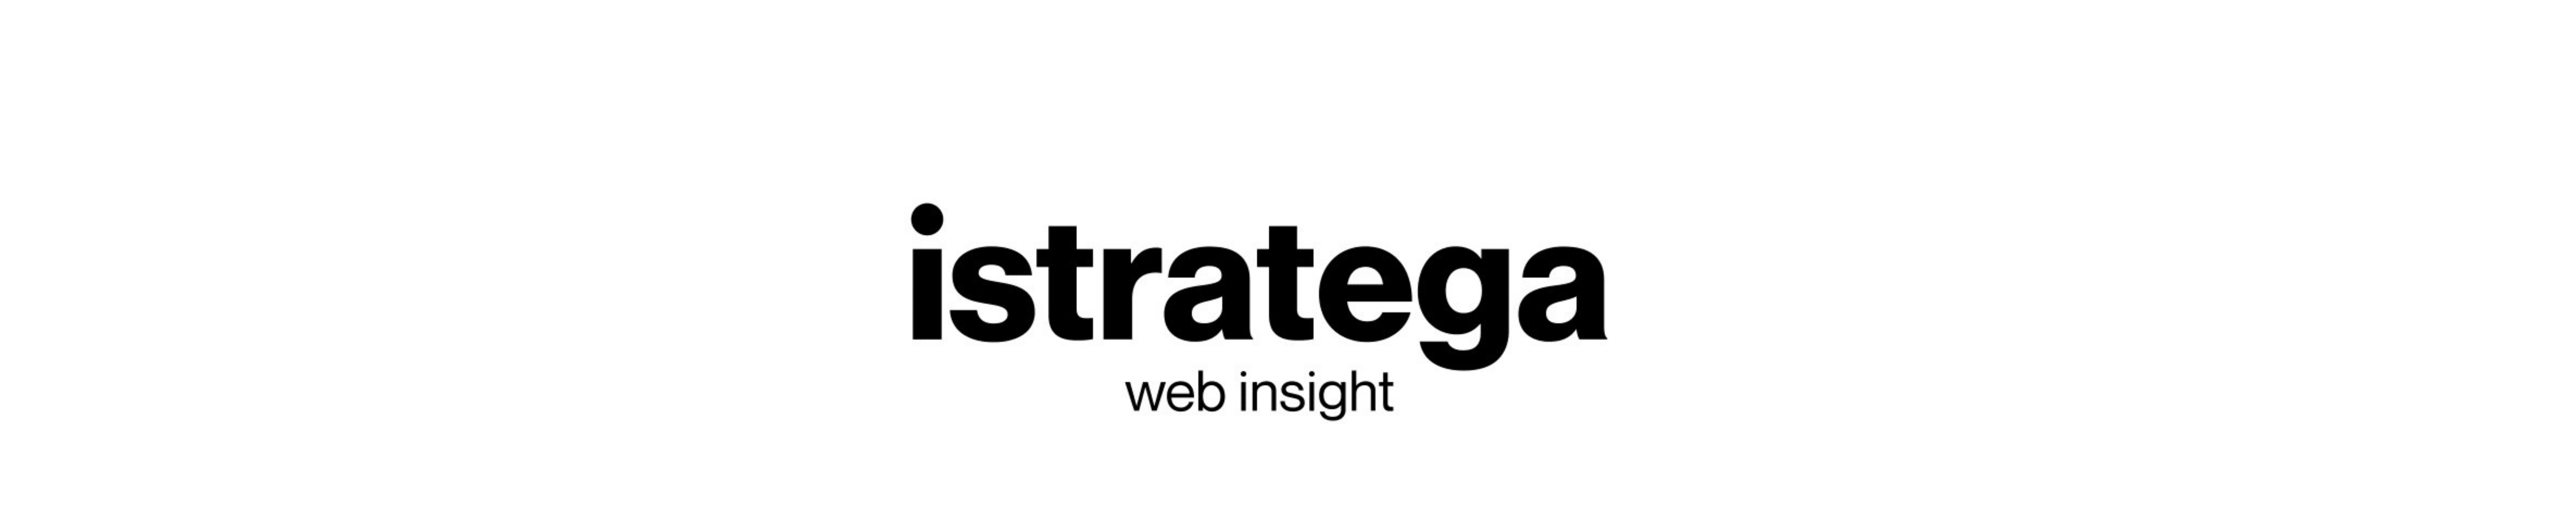 Istratega Web Insight's profile banner